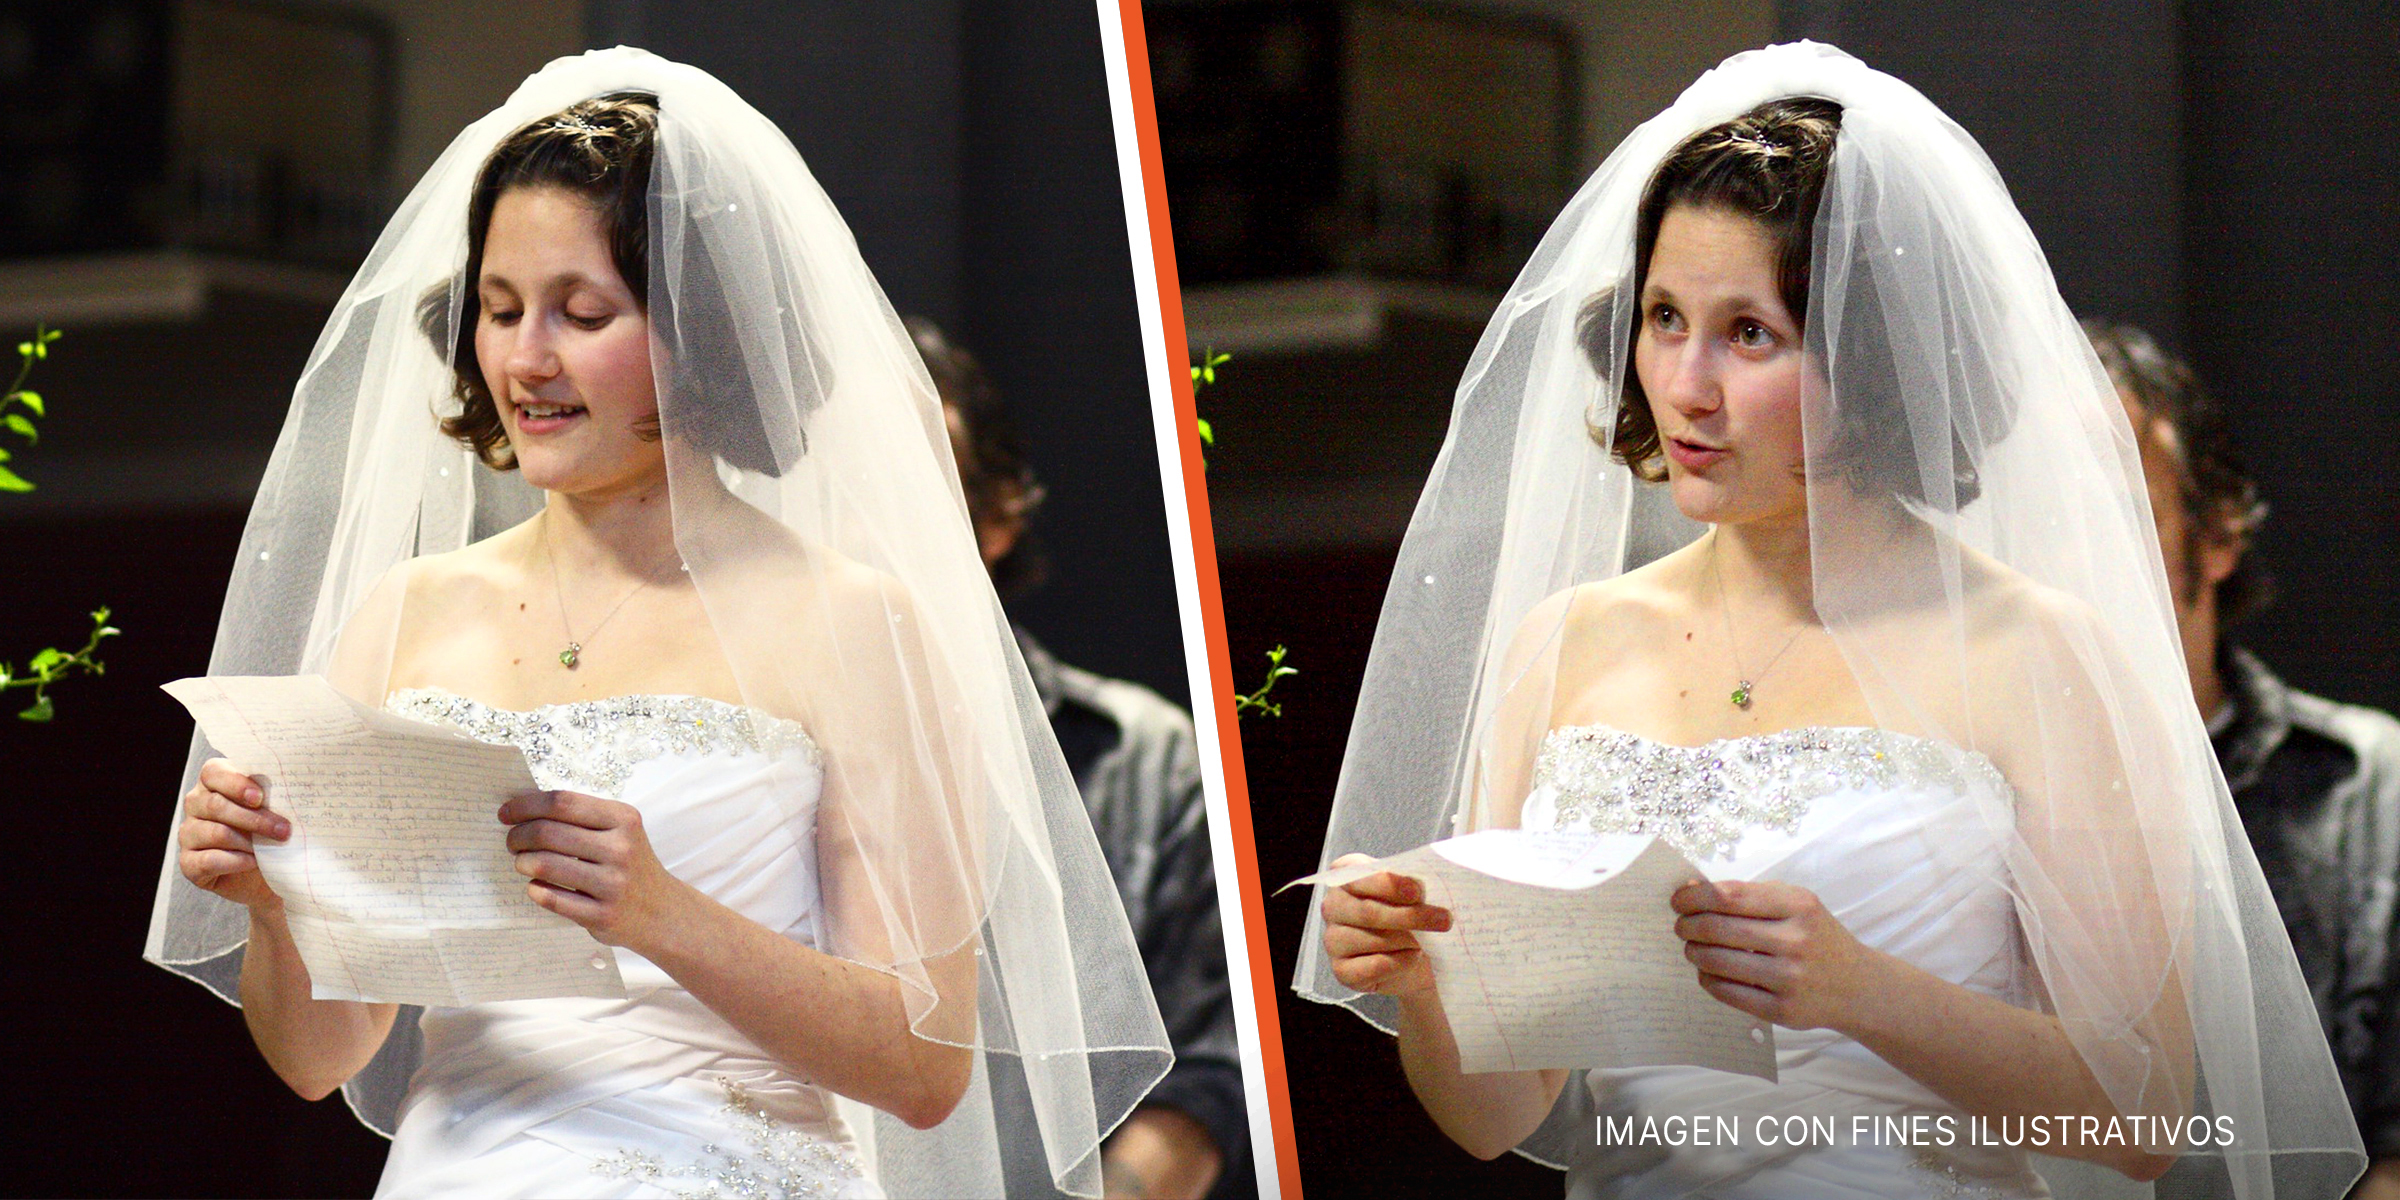 Una novia lee una carta en voz alta durante una ceremonia de votos matrimoniales. | Foto: Flickr.com/ragesoss (CCC BY-SA 2.0)